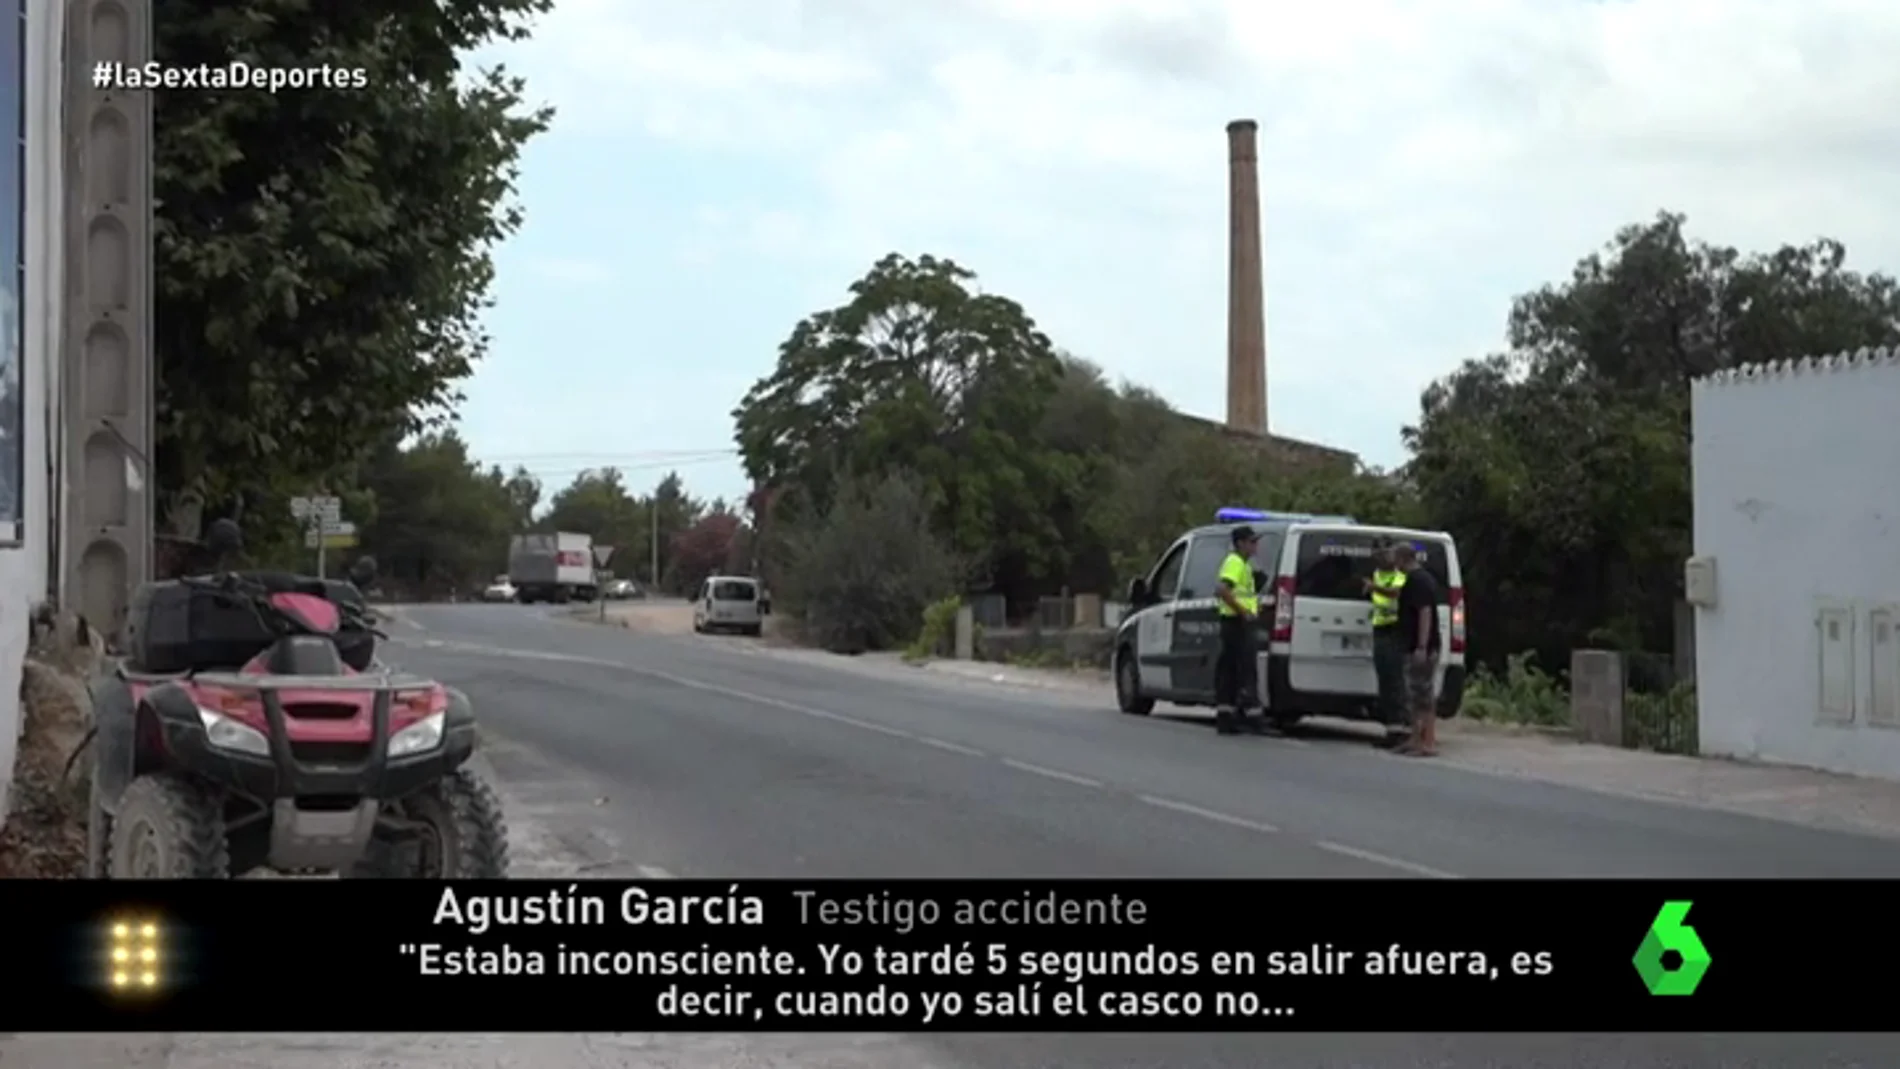 Un testigo del accidente de Ángel Nieto: "El quad salió volando hacia la furgoneta y él chocó contra el suelo"